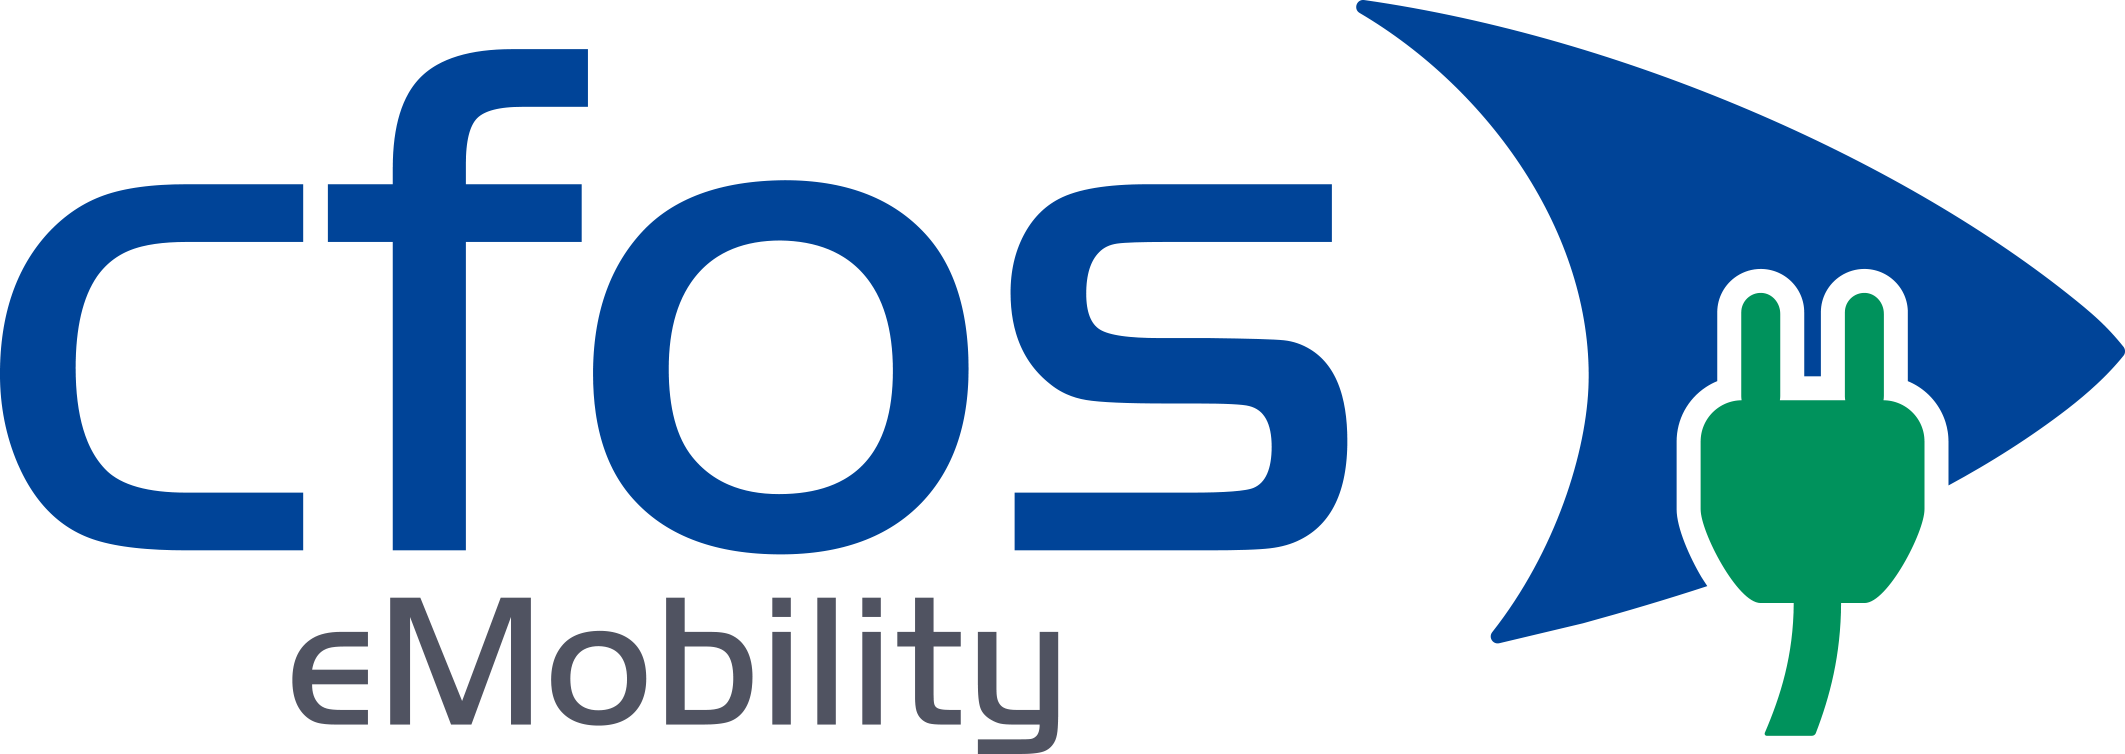 cFos eMobility Webseite